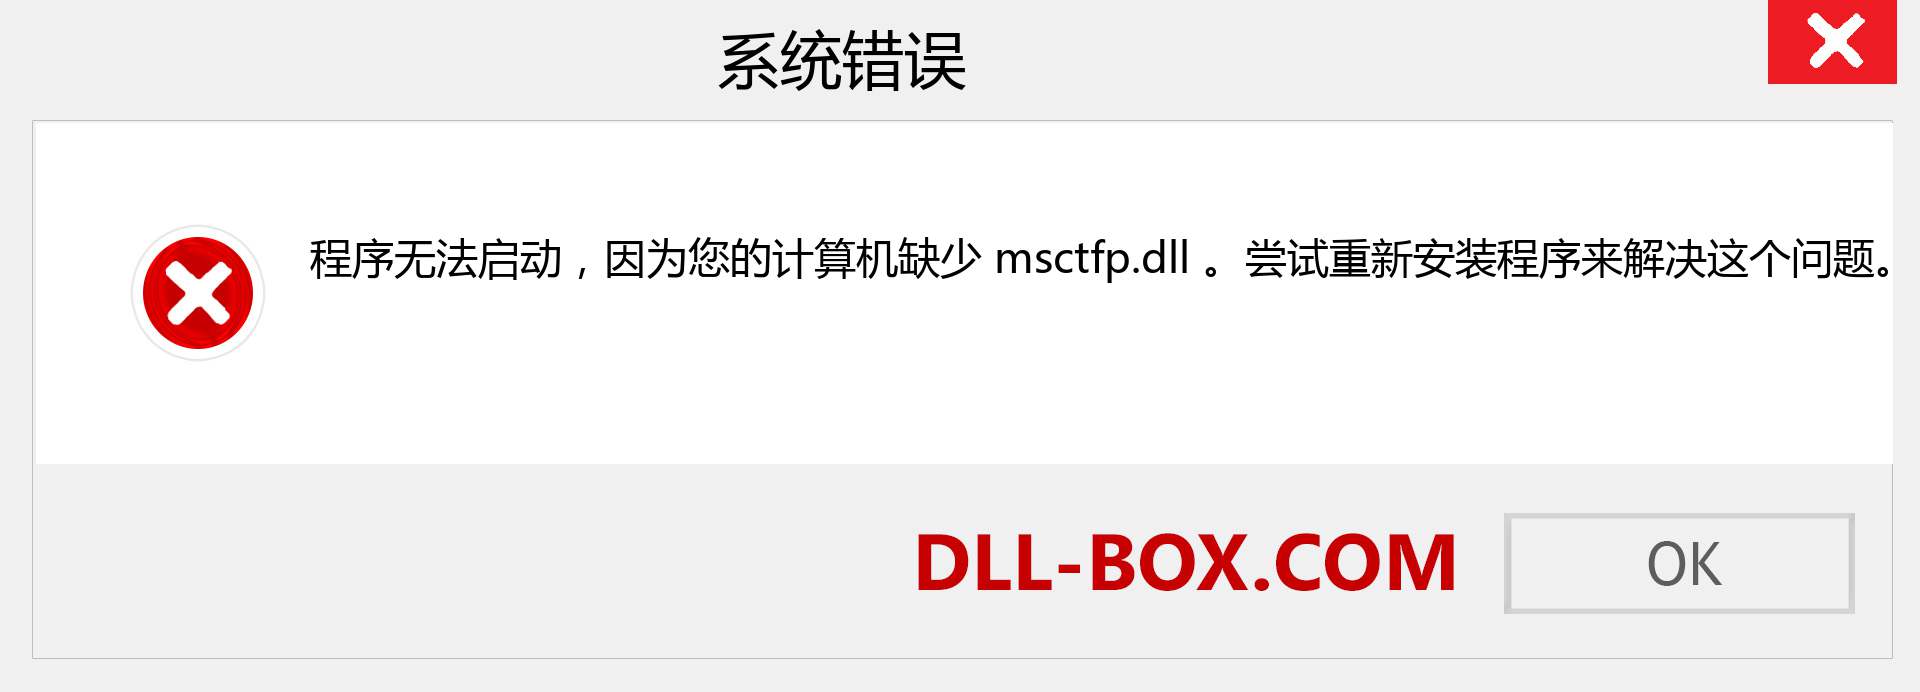 msctfp.dll 文件丢失？。 适用于 Windows 7、8、10 的下载 - 修复 Windows、照片、图像上的 msctfp dll 丢失错误